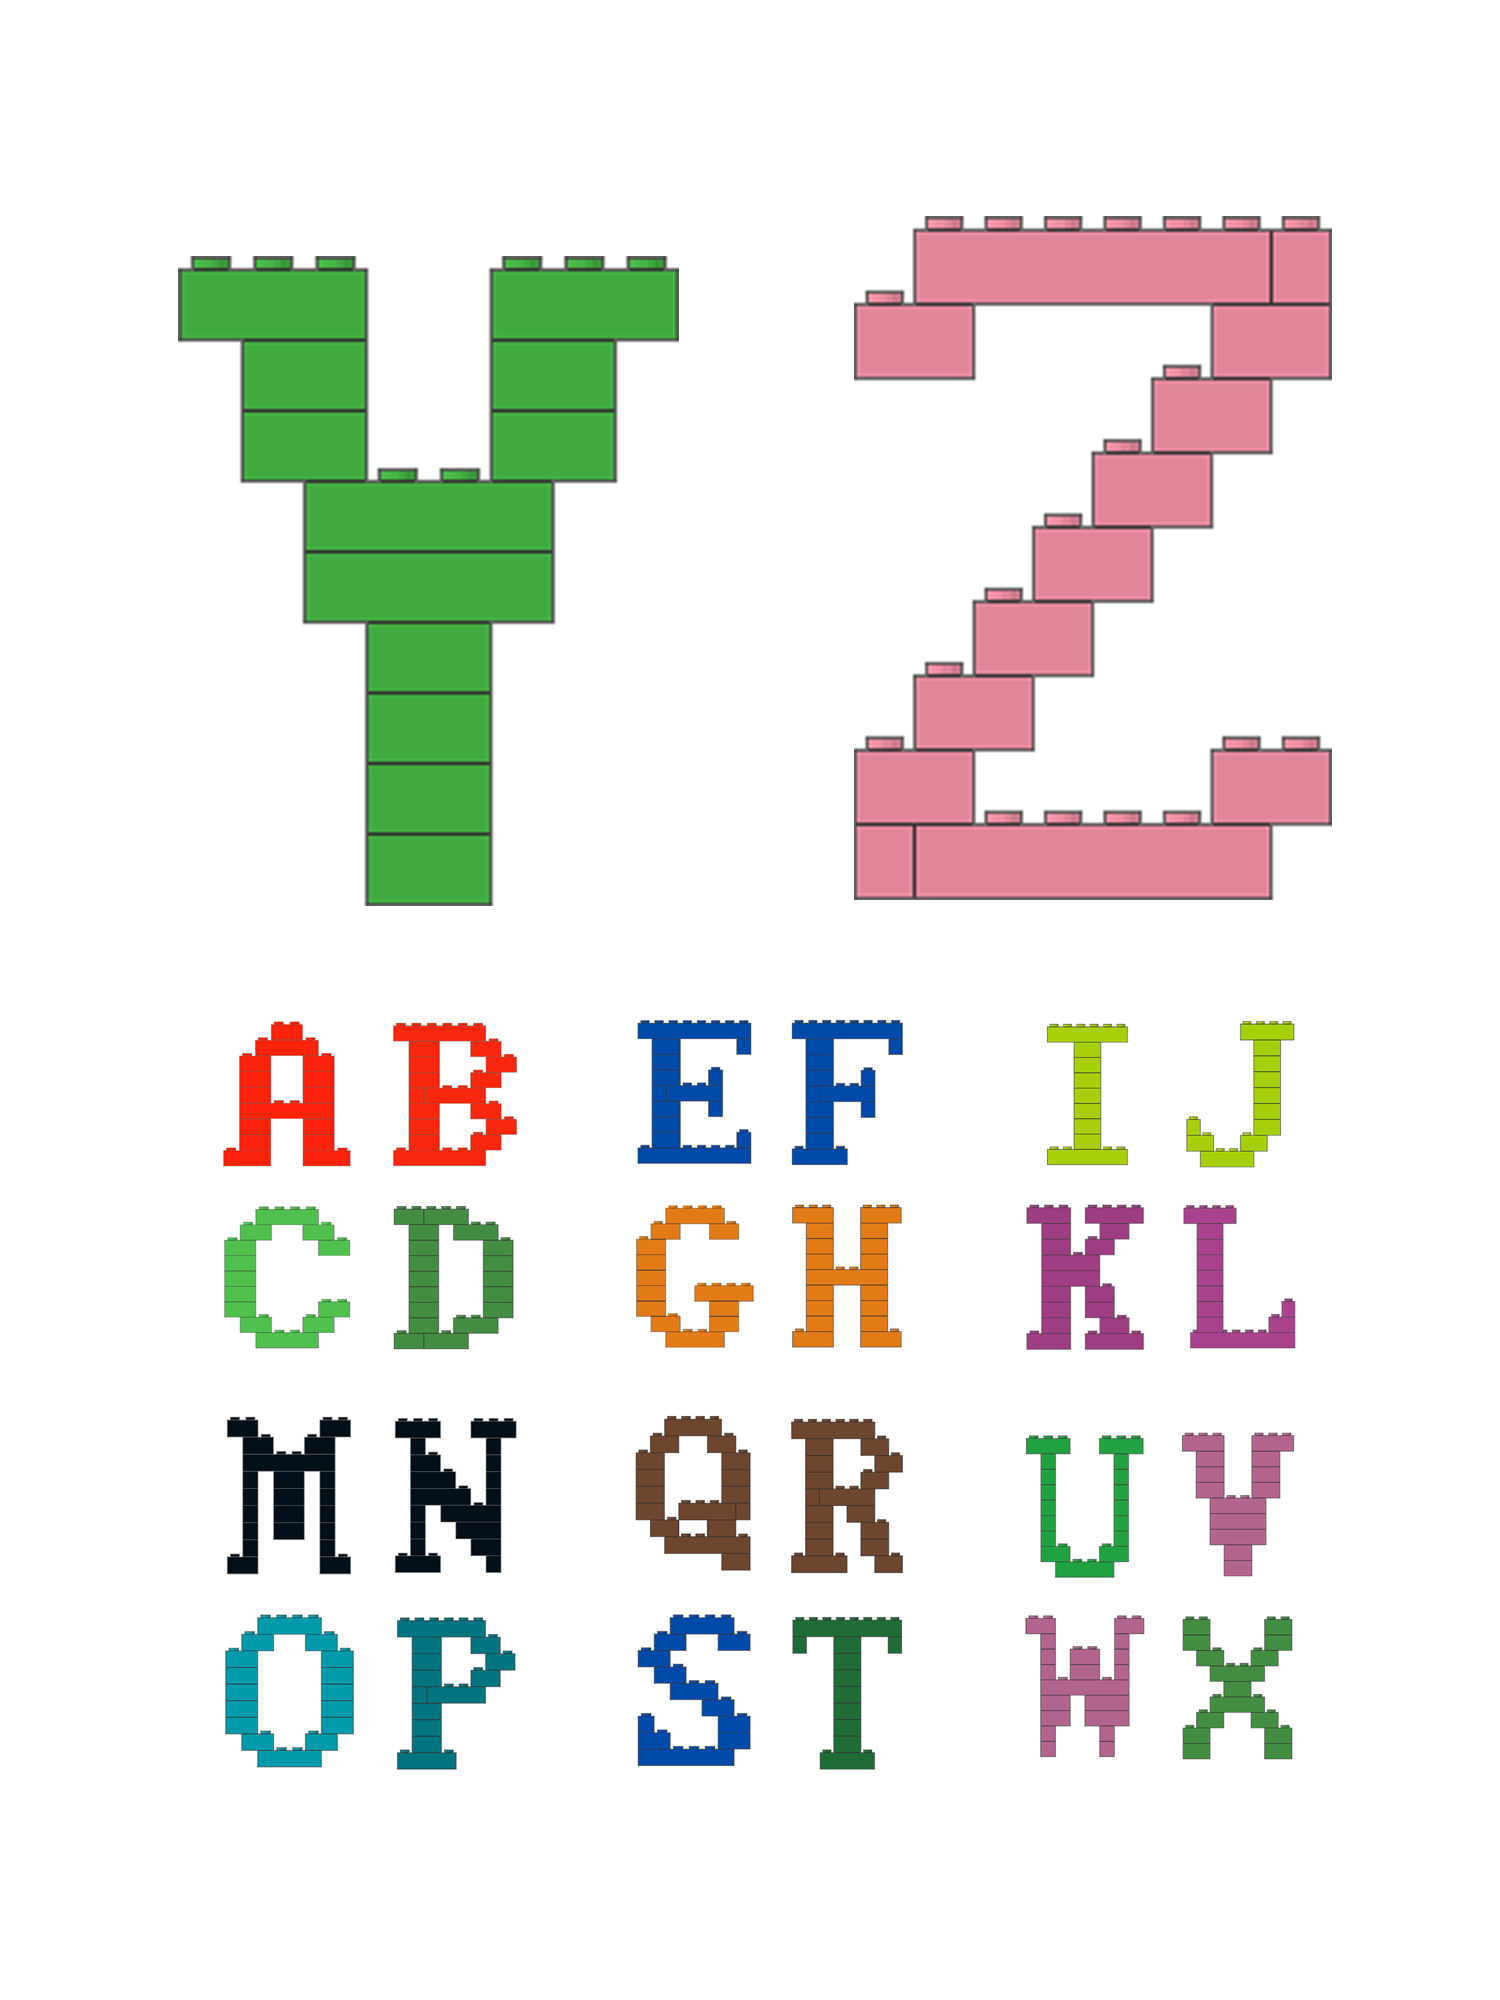 有一种字体,叫乐高体,用乐高积木拼26个英文字母